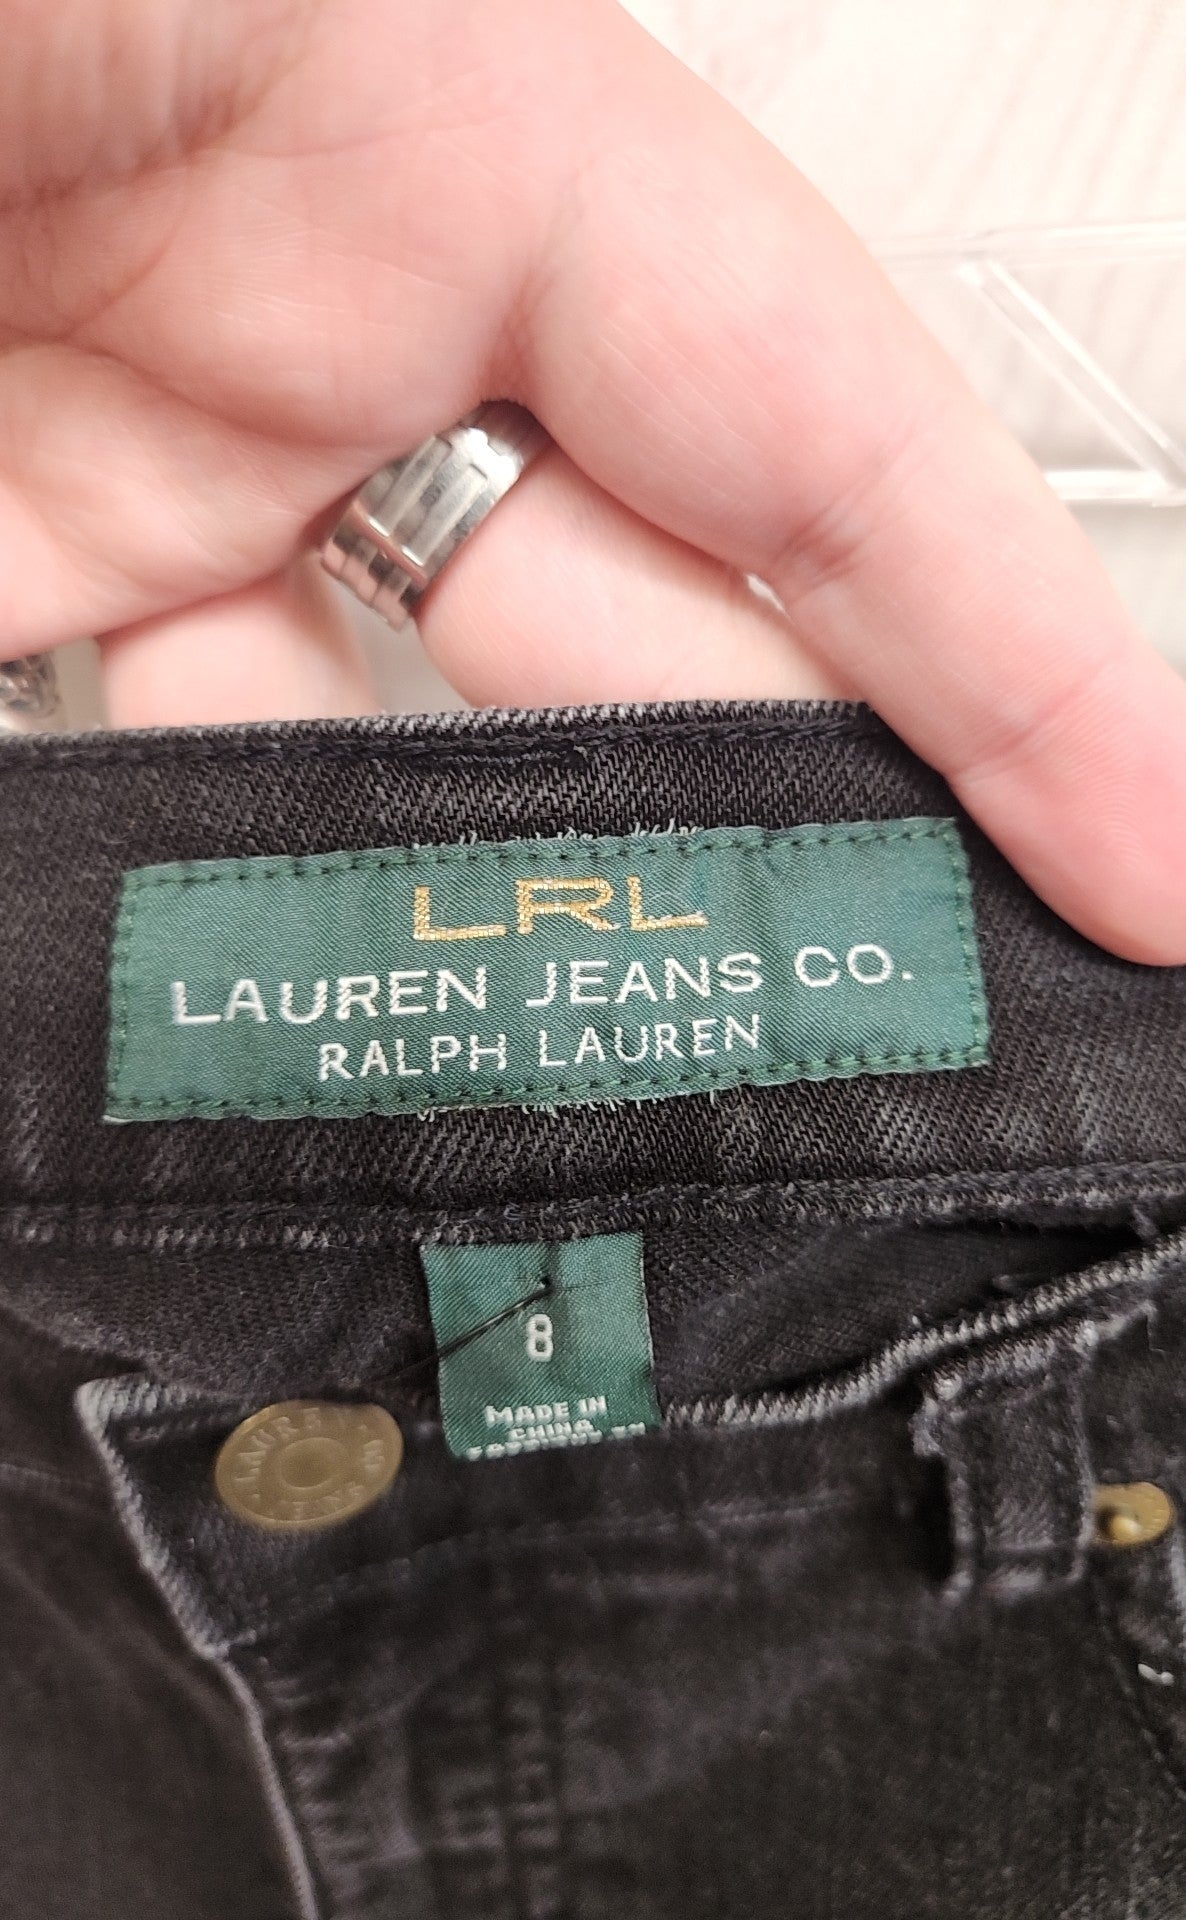 Lauren by Ralph Lauren Women's Size 8 Black Shorts